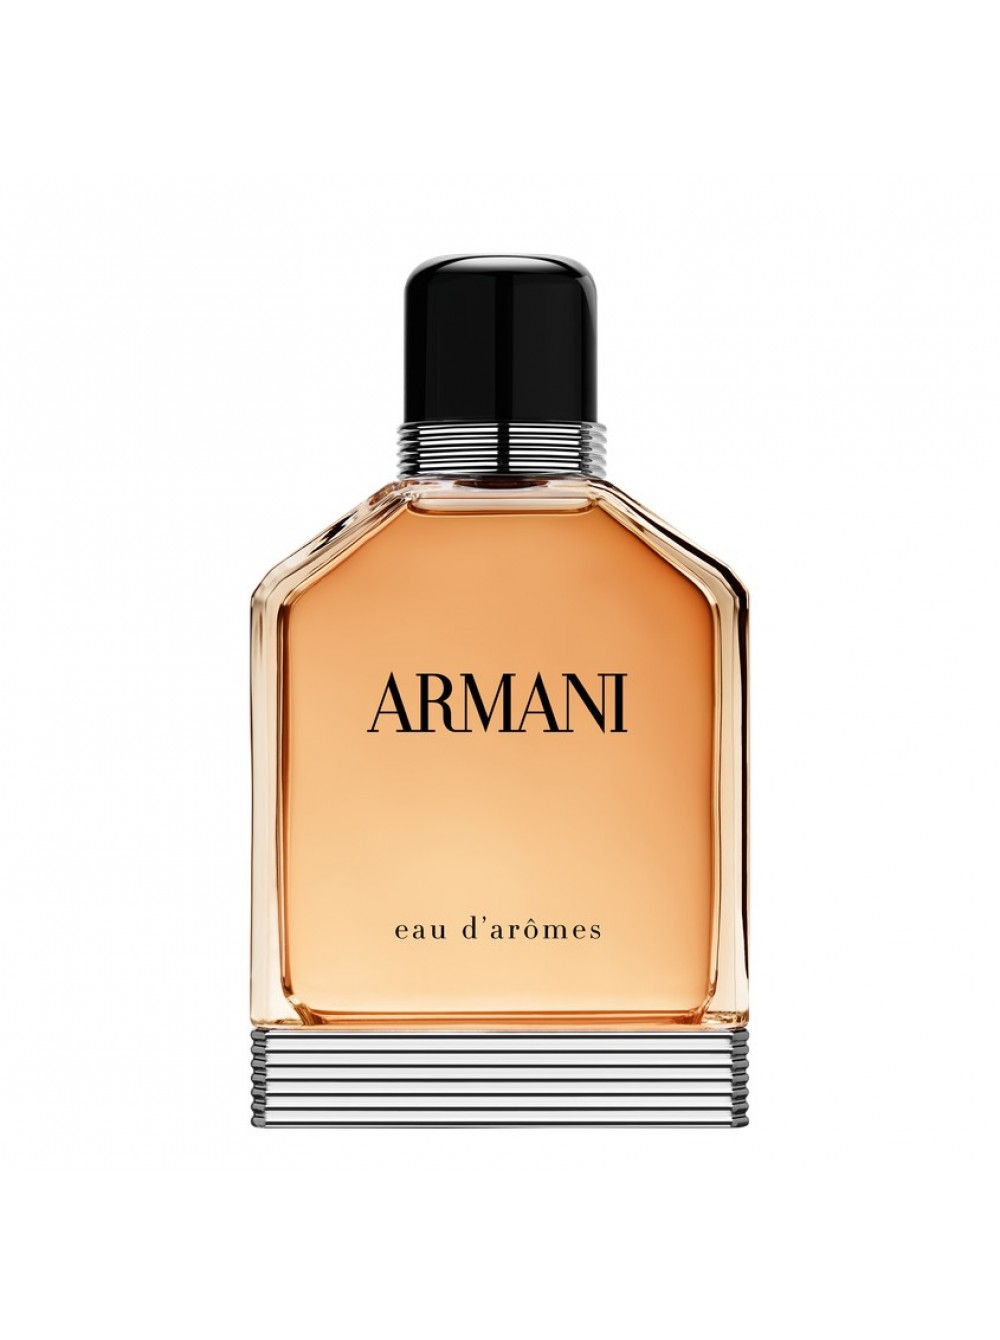 Giorgio armani pour homme. Giorgio Armani Eau d`aromes. Giorgio Armani Eau pour homme 100ml.. Armani духи мужские цена.